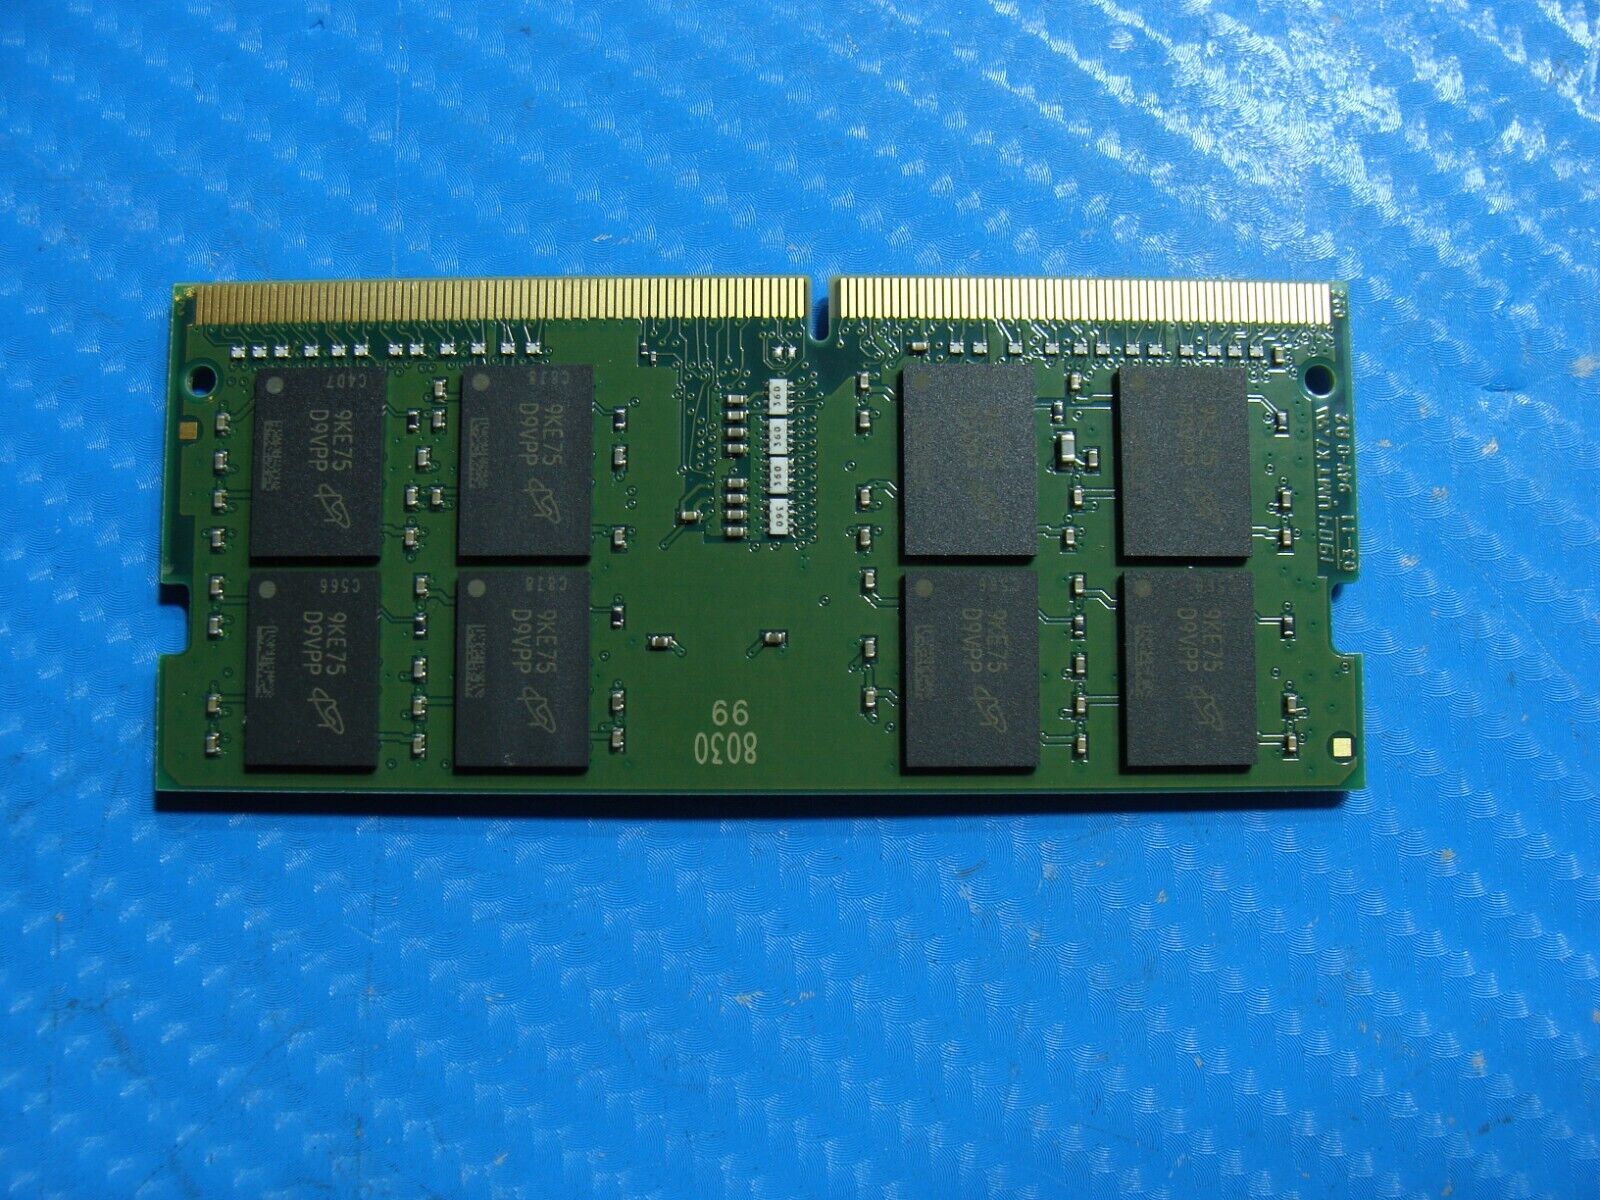 Dell 7390 Kingston 16GB 2Rx8 PC4-2400T Memory Ram So-Dimm K821PJ-MIE